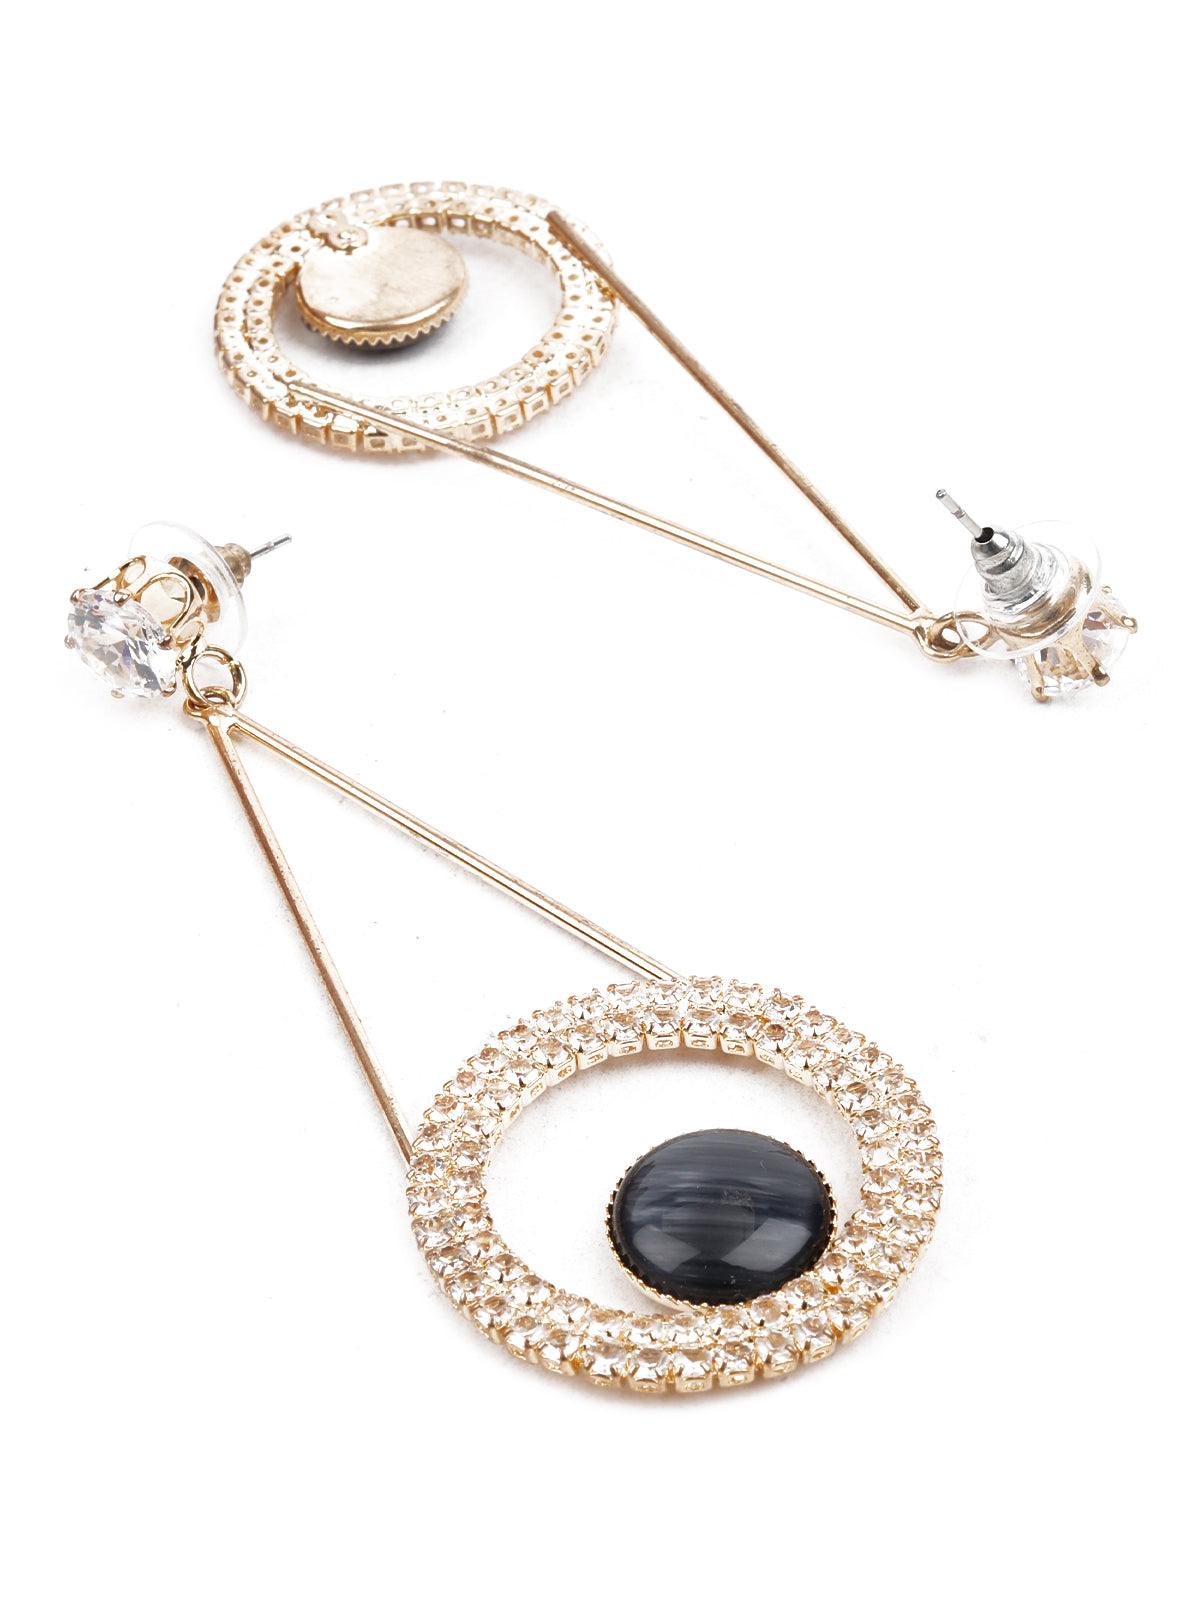 Women's Ornate Black And Gold Dangle Earrings - Odette